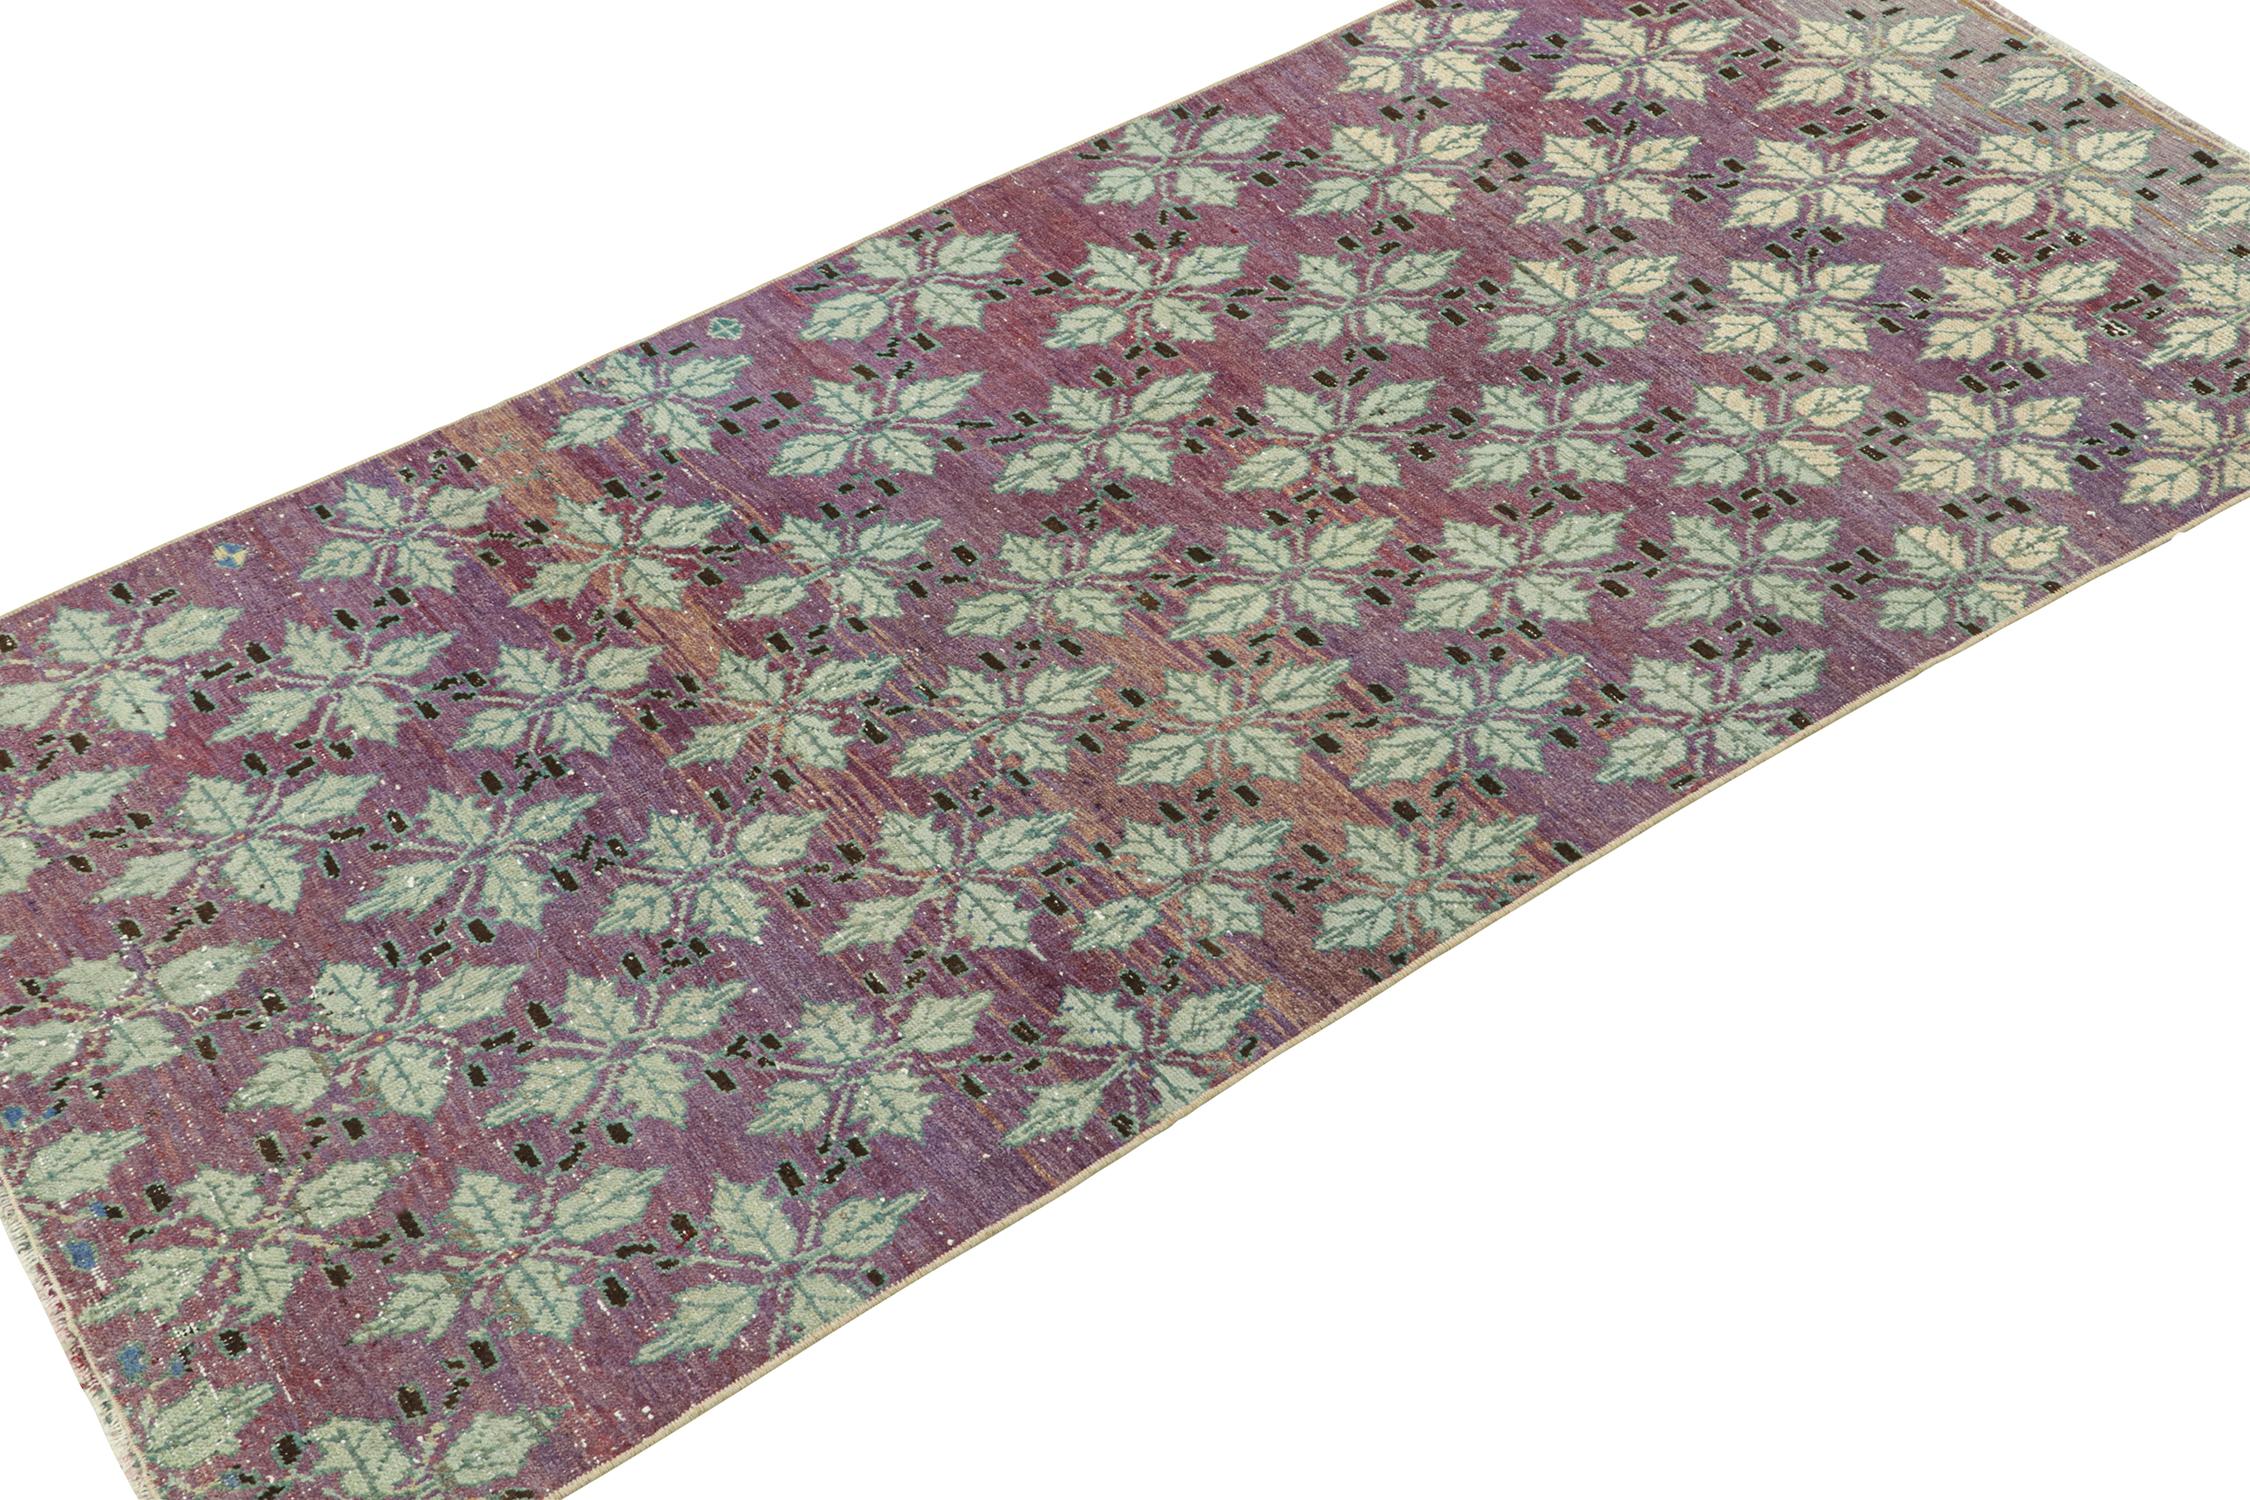 Art Deco Vintage Zeki Müren Rug in Purple with Floral Patterns, by Rug & Kilim For Sale